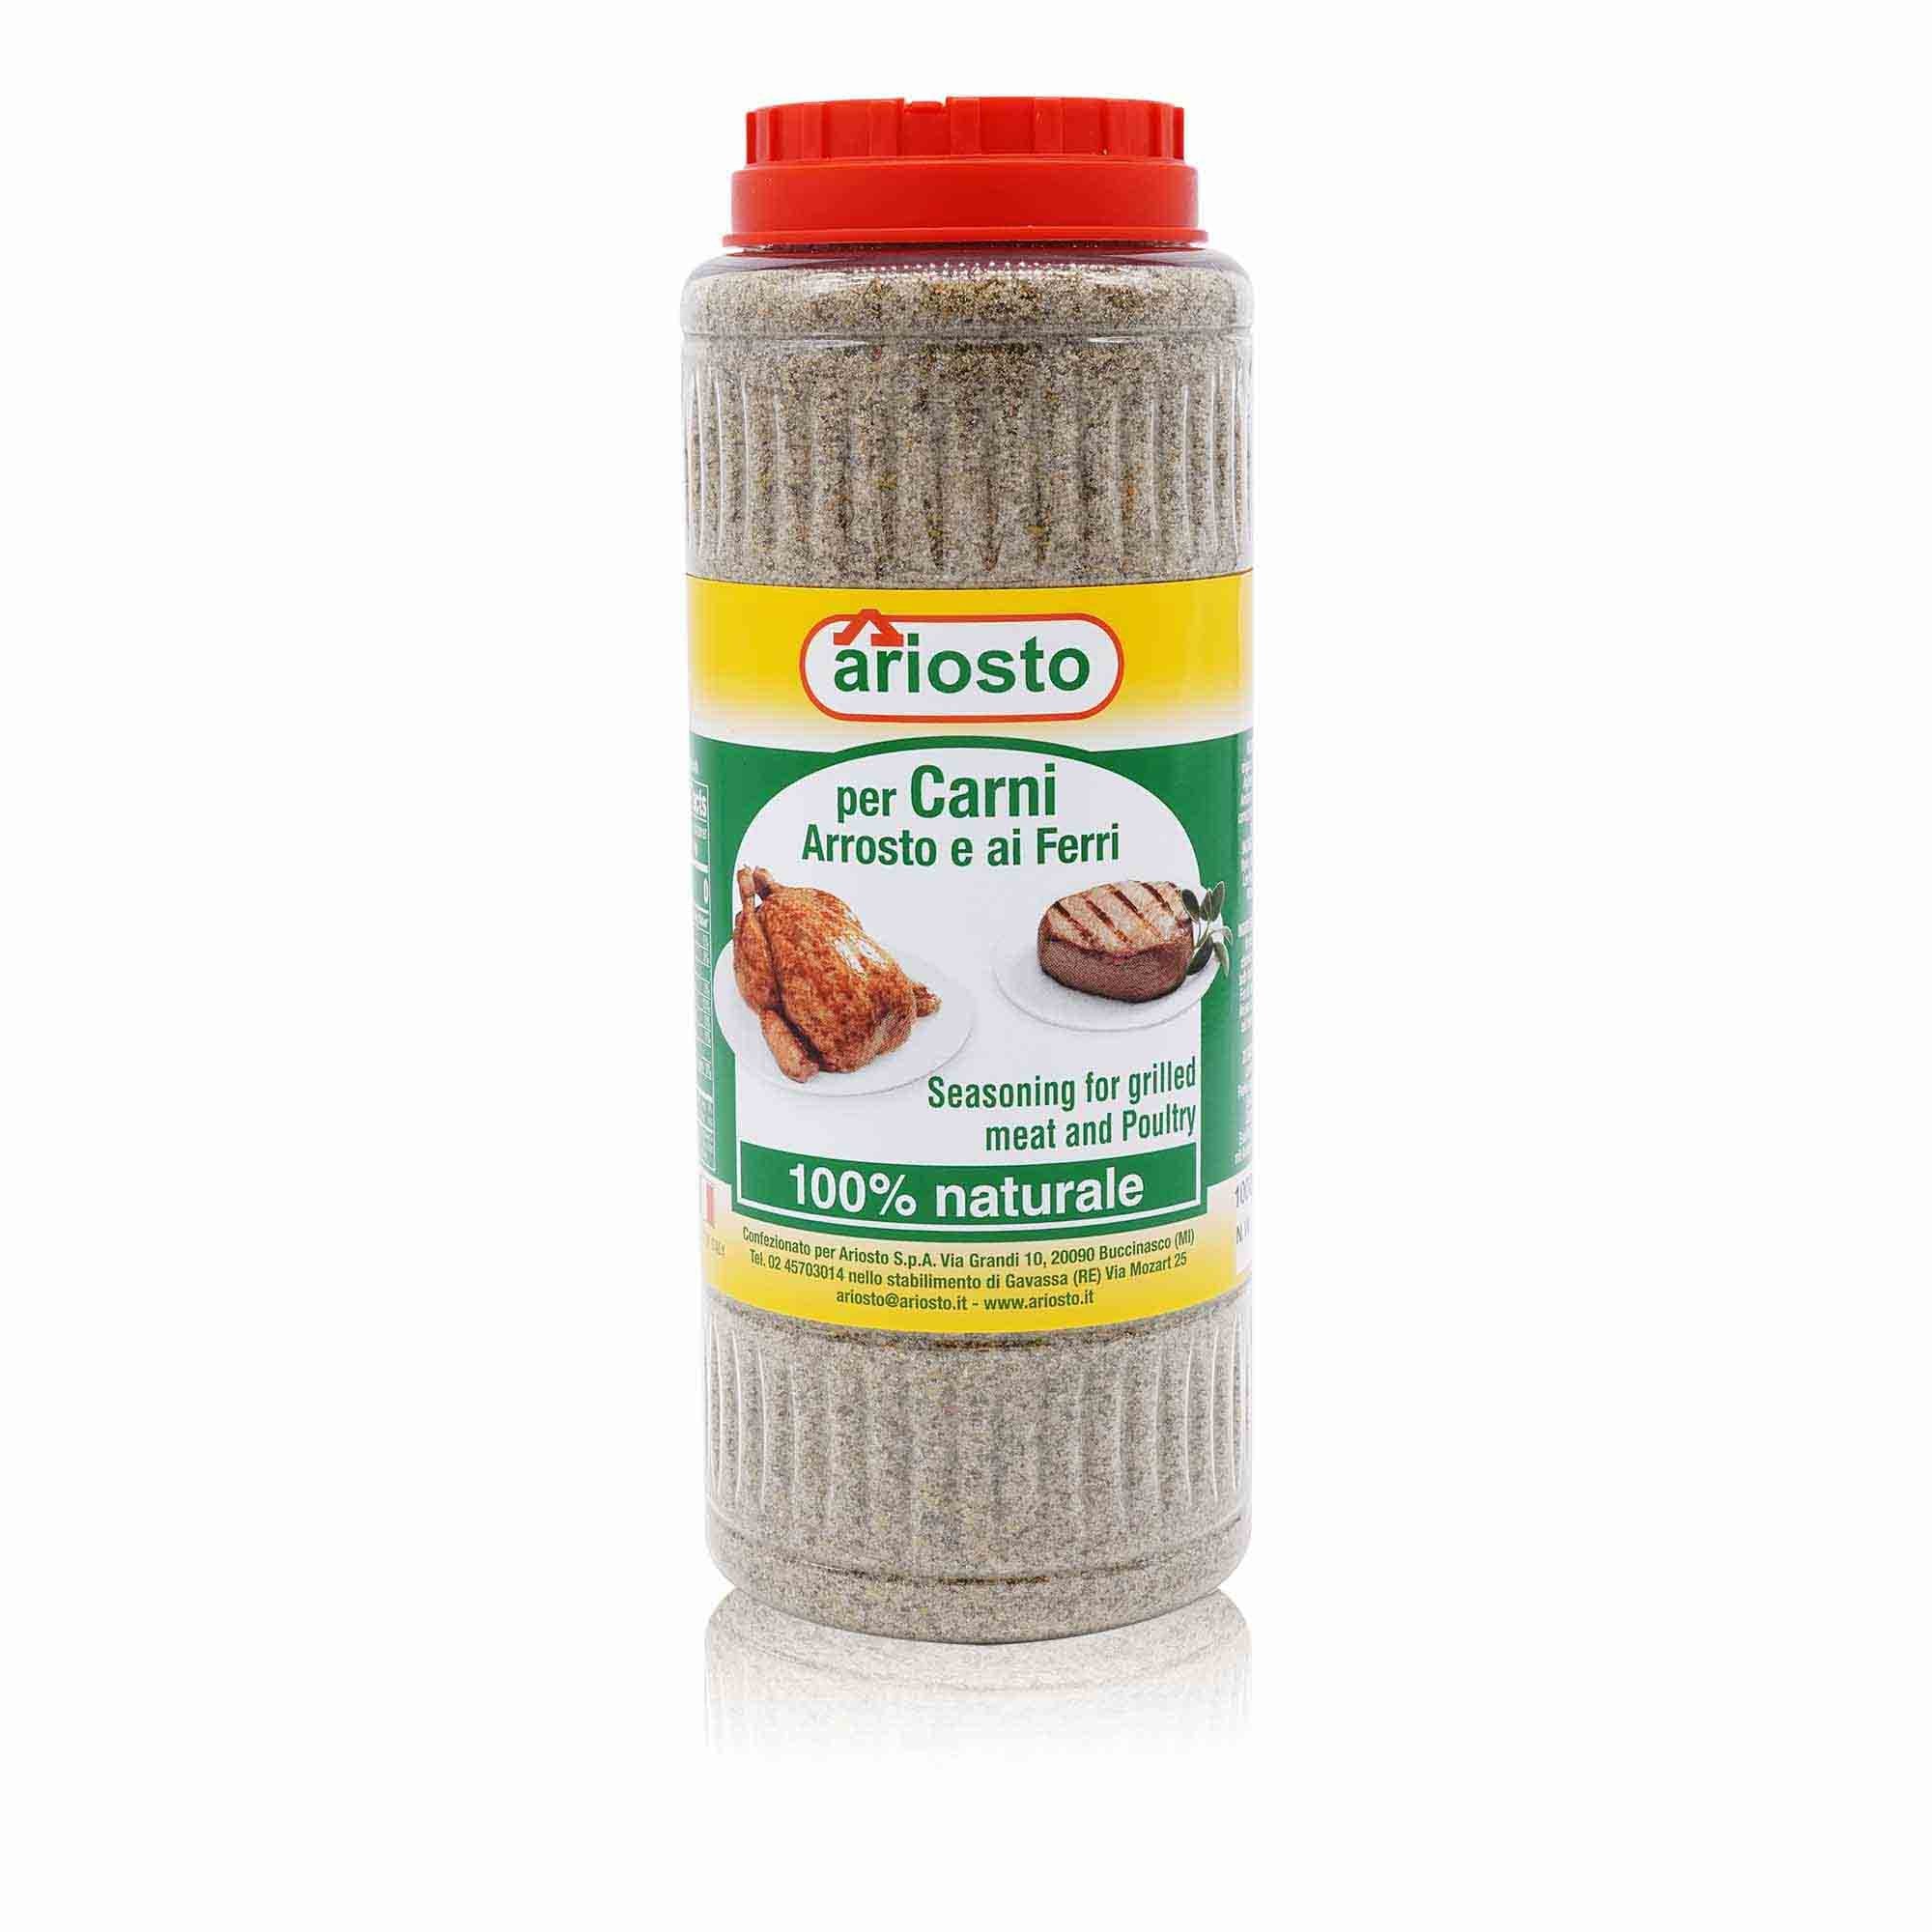 ARIOSTO Insaporitore per carni arrosto – Gewürzsalz für gegrilltes Fleisch - 1kg - italienisch - einkaufen.de